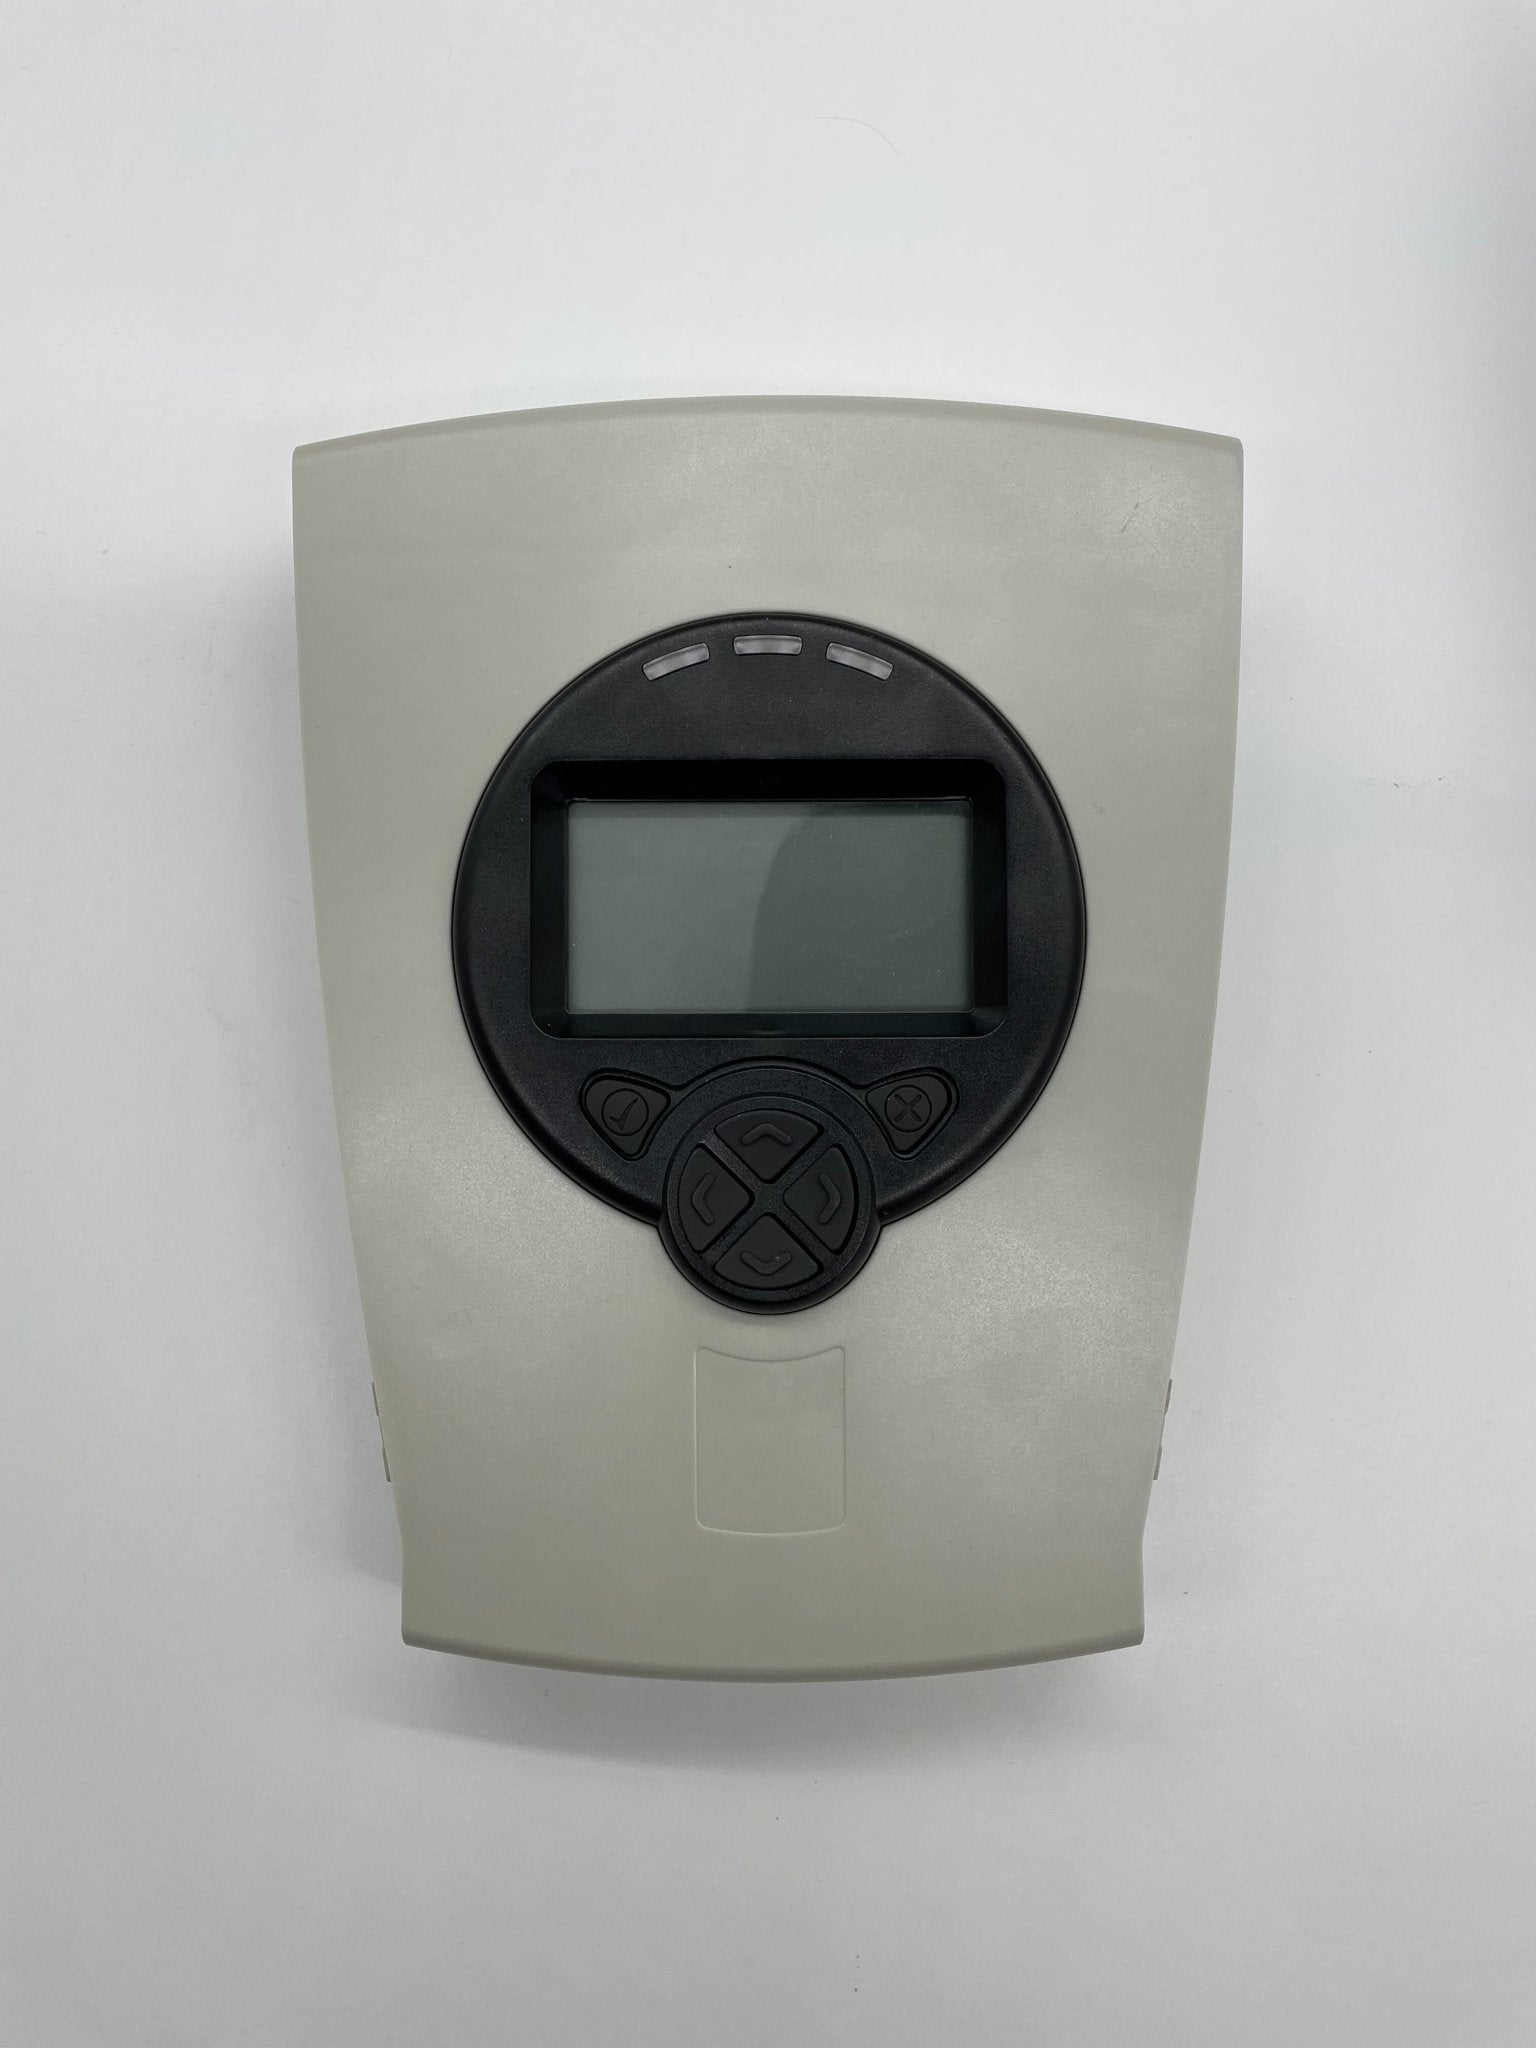 Fireray 5000-103 - The Fire Alarm Supplier